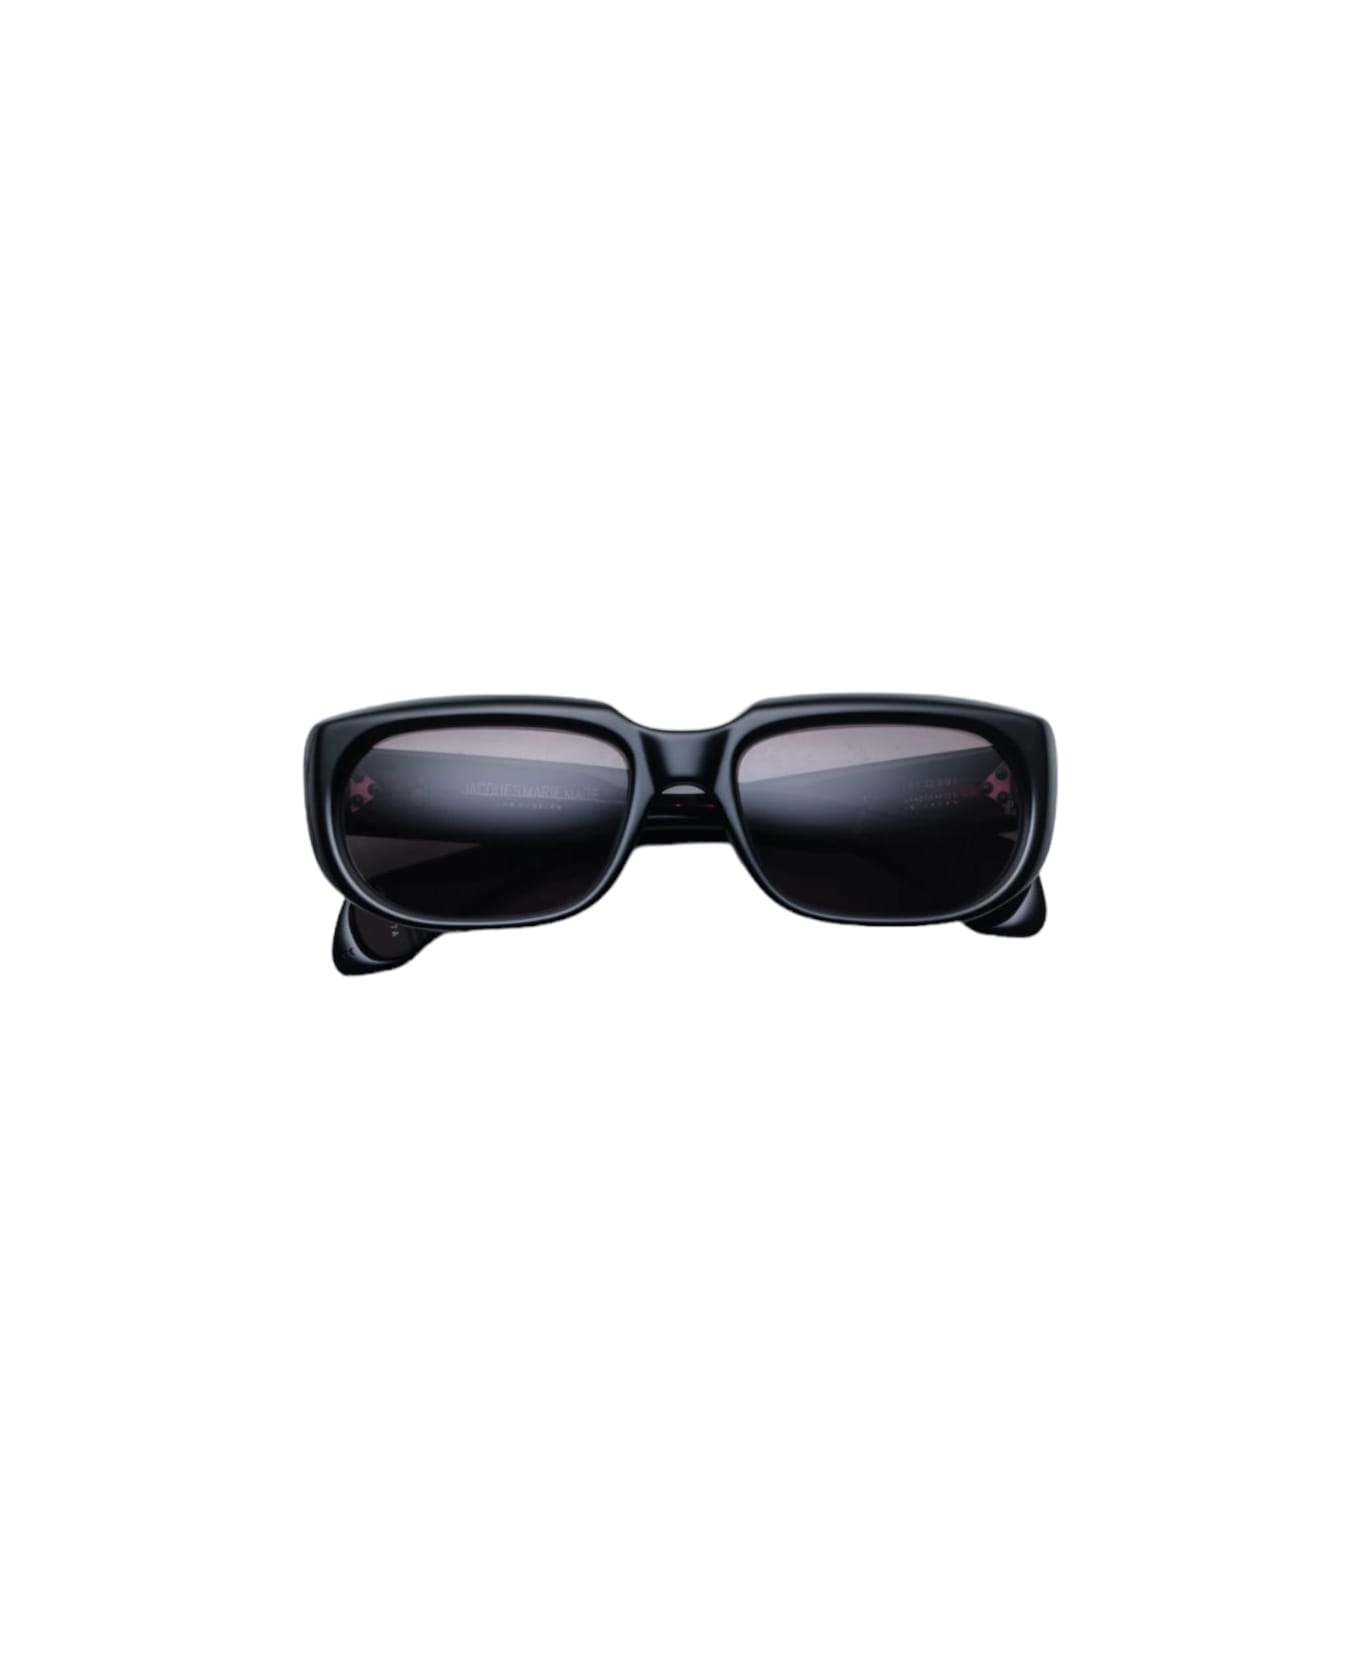 Jacques Marie Mage Sarter - Noir 7 Sunglasses